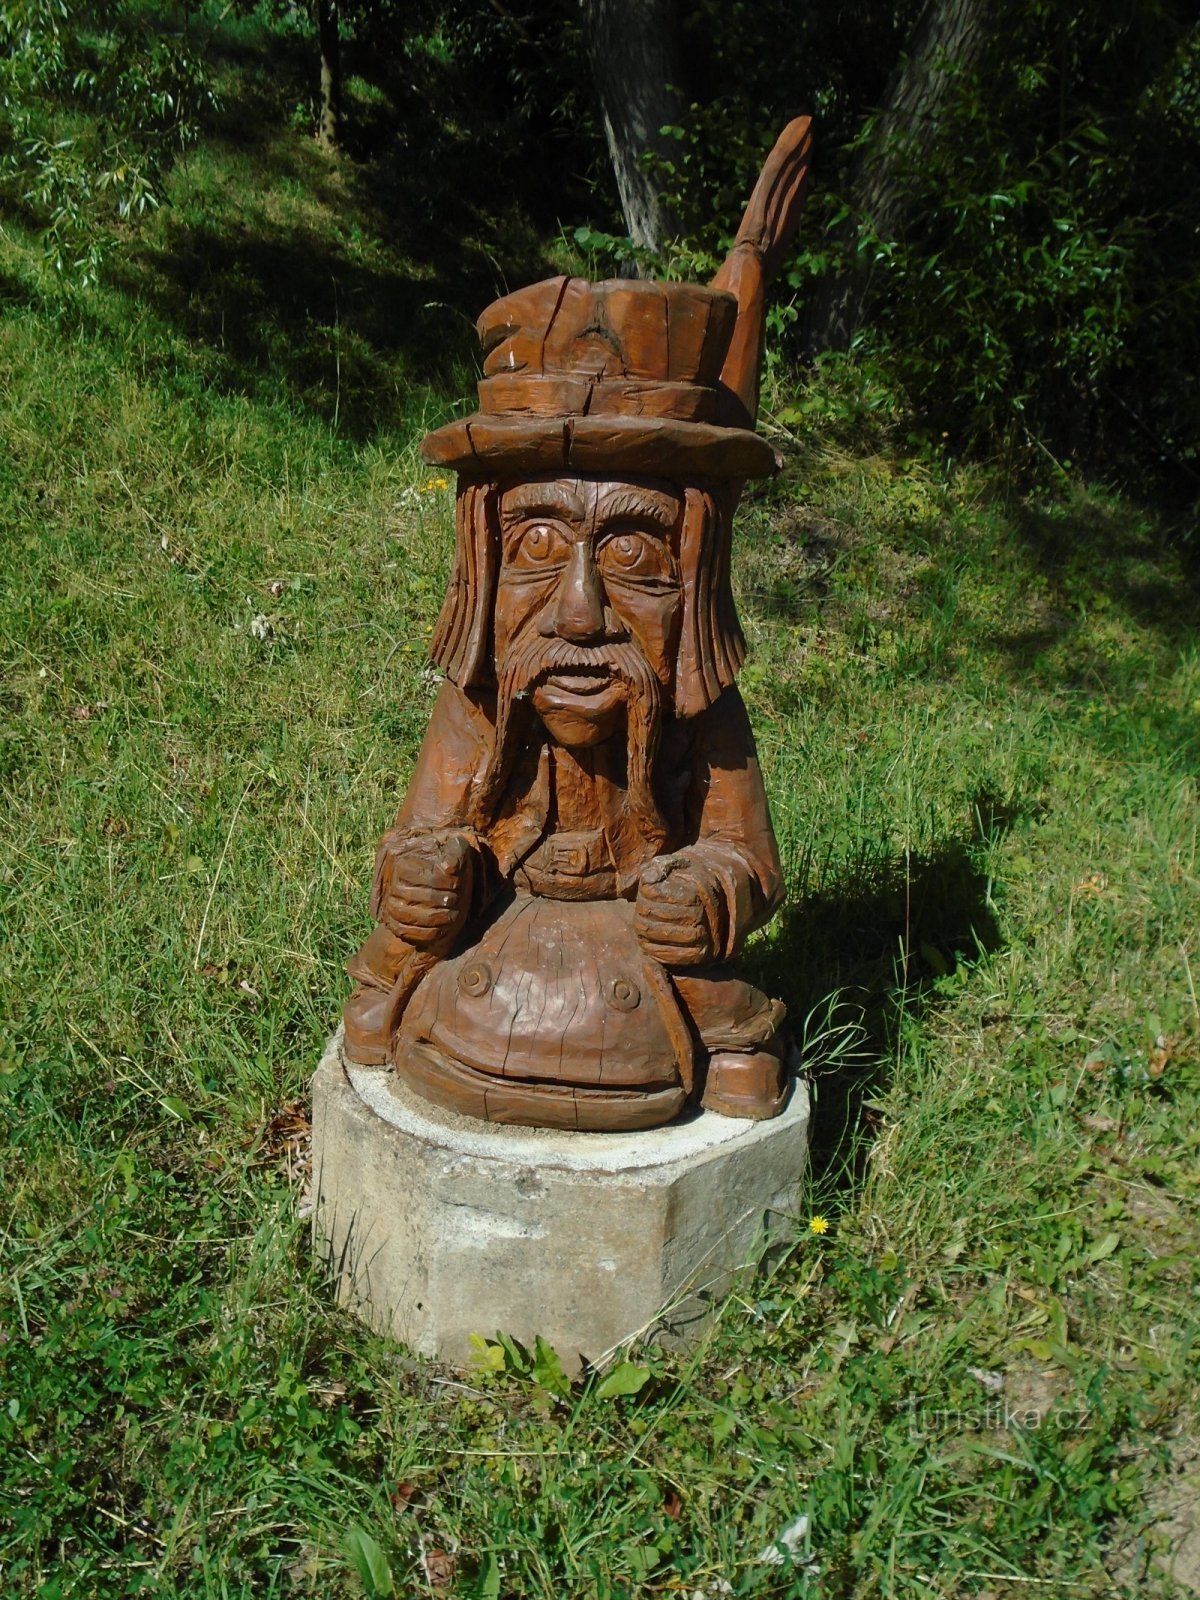 Rzeźba w drewnie wodnika nad stawem (Vilantice, 3.7.2018)